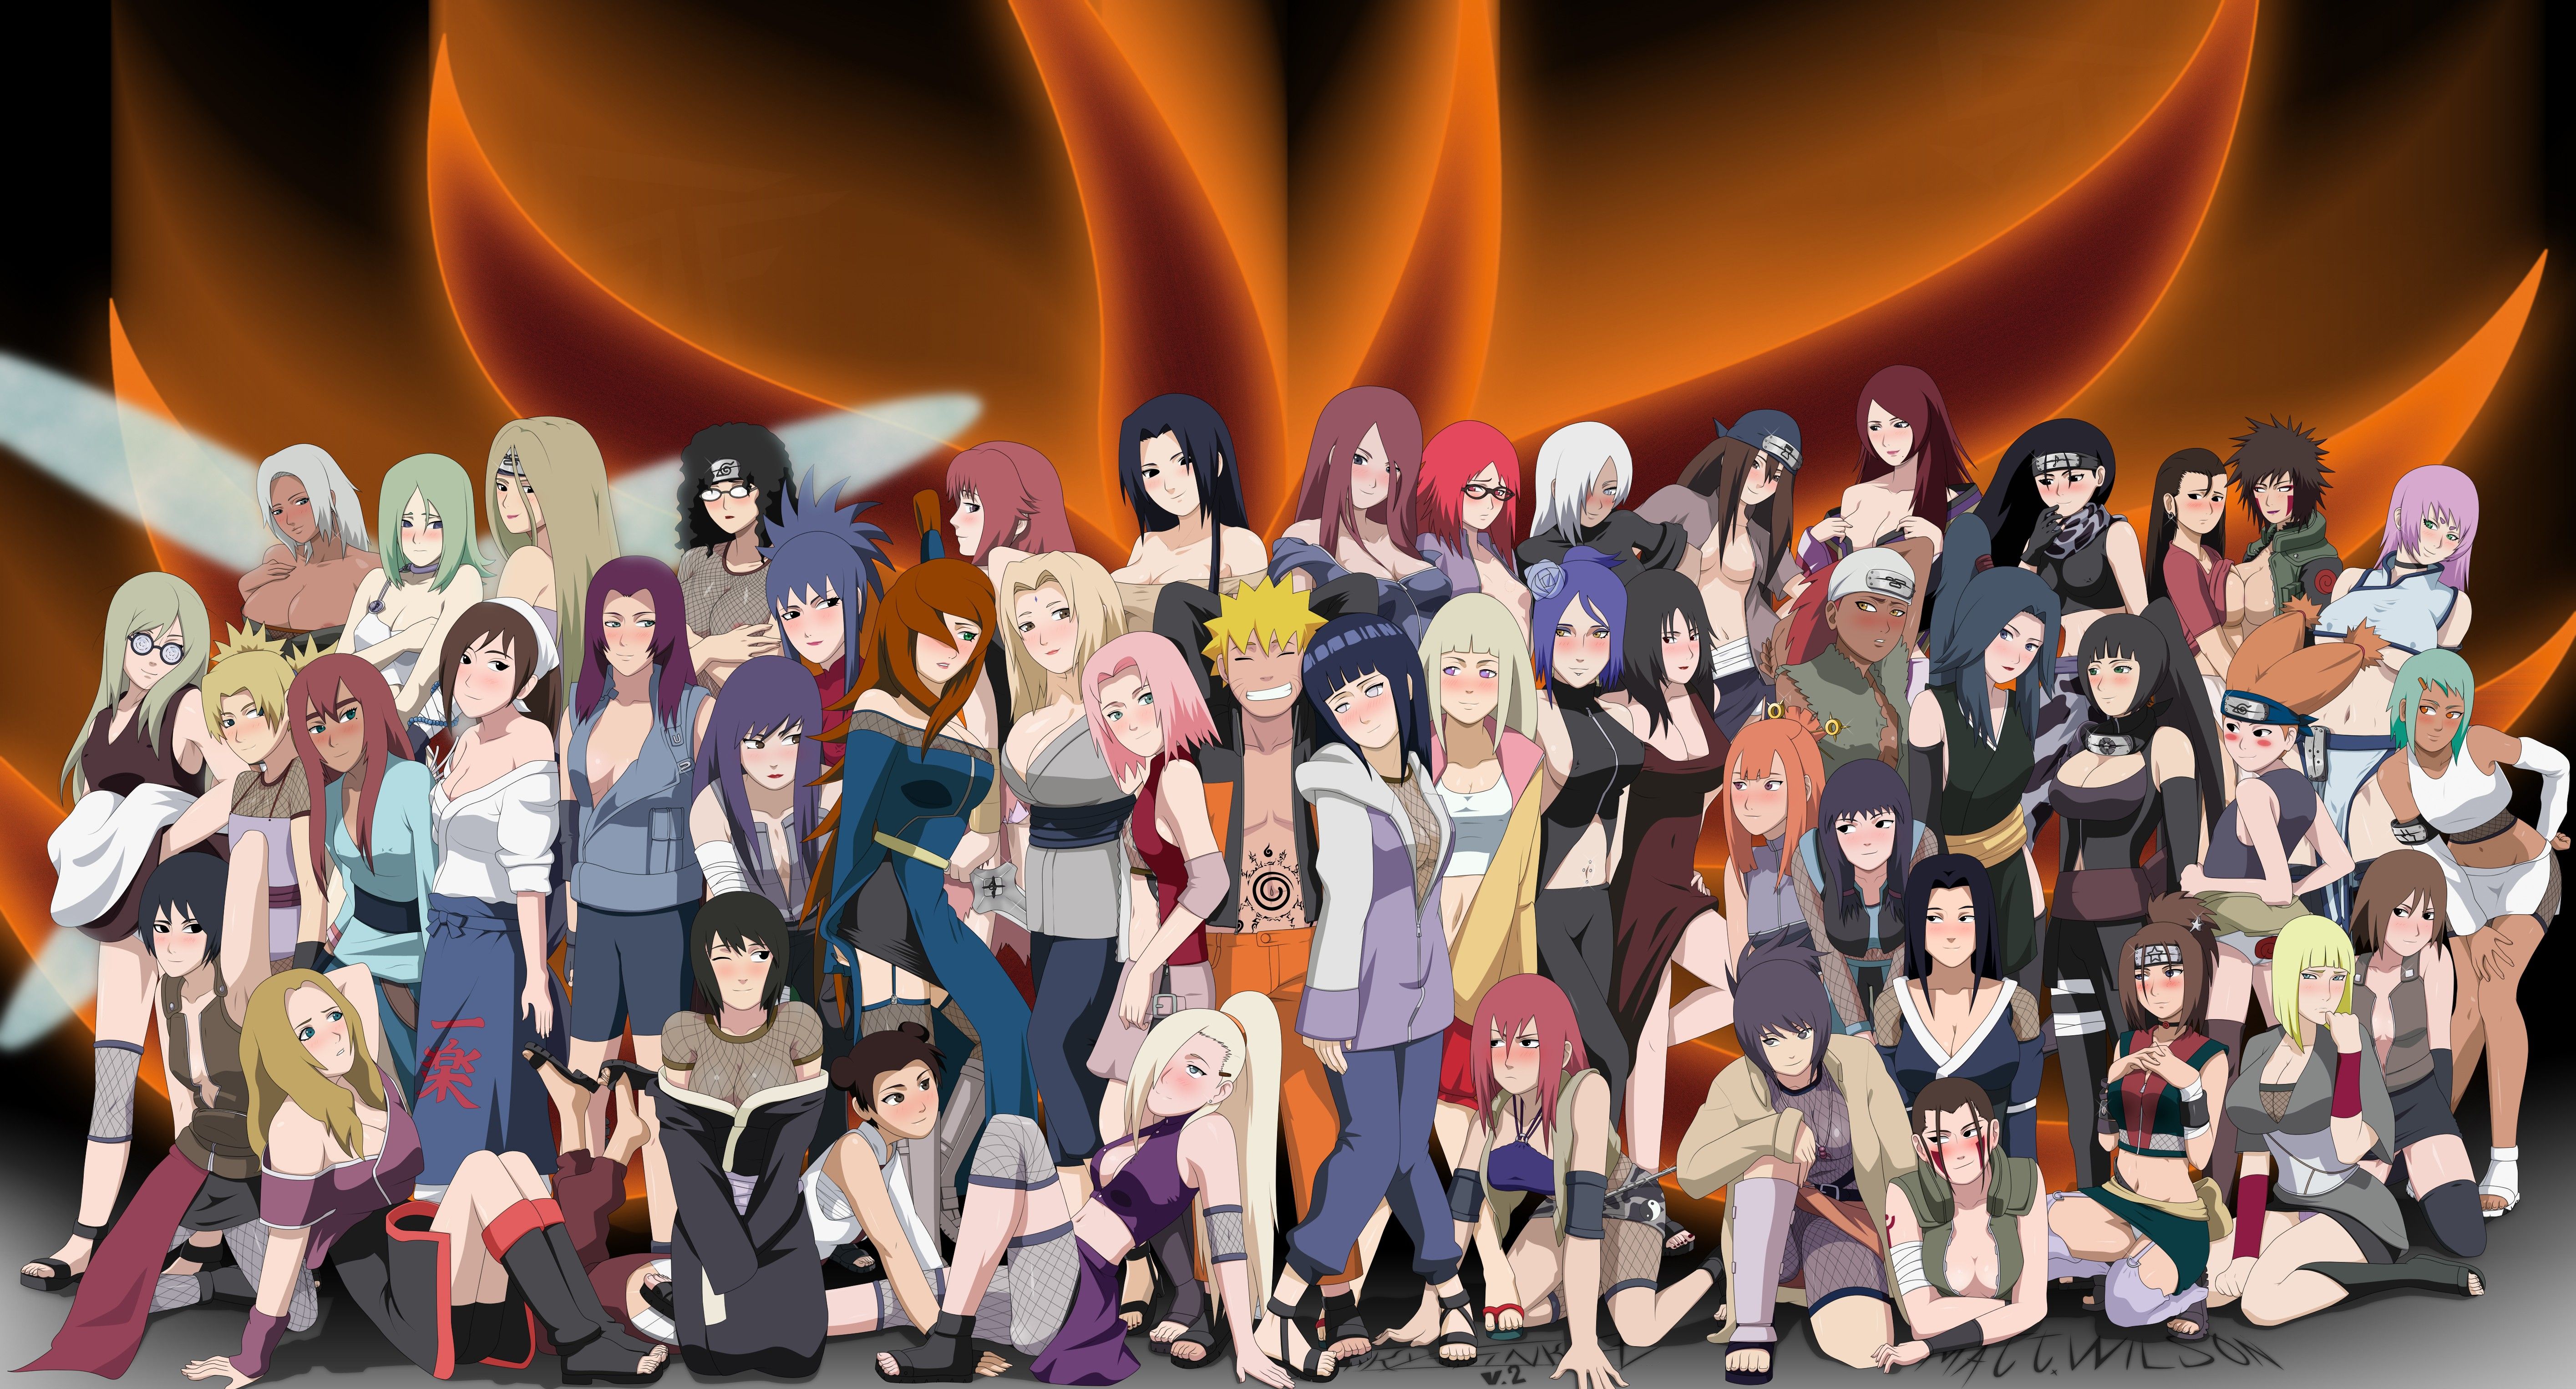 Download wallpaper from anime Naruto with tags: Naruto Uzumaki, Sakura Haruno, Naruto, Hinata Hyūga, Screen, Tenten, Tsunade, Anko, Samui